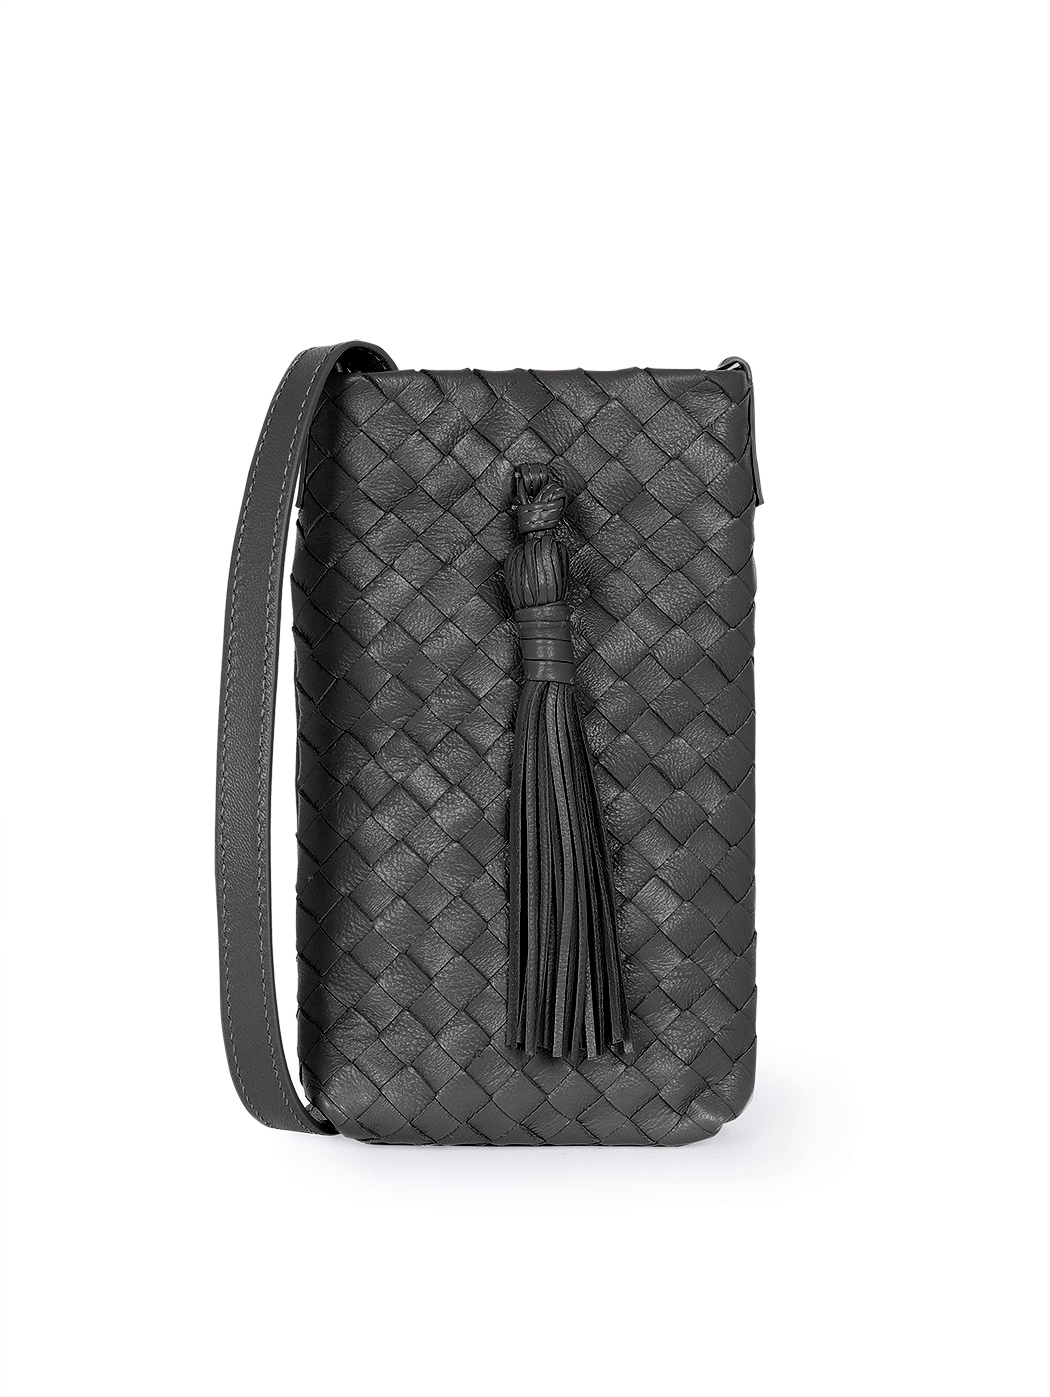 Плетеная сумочка кросс – боди для телефона коллекции Intrecci черного цвета